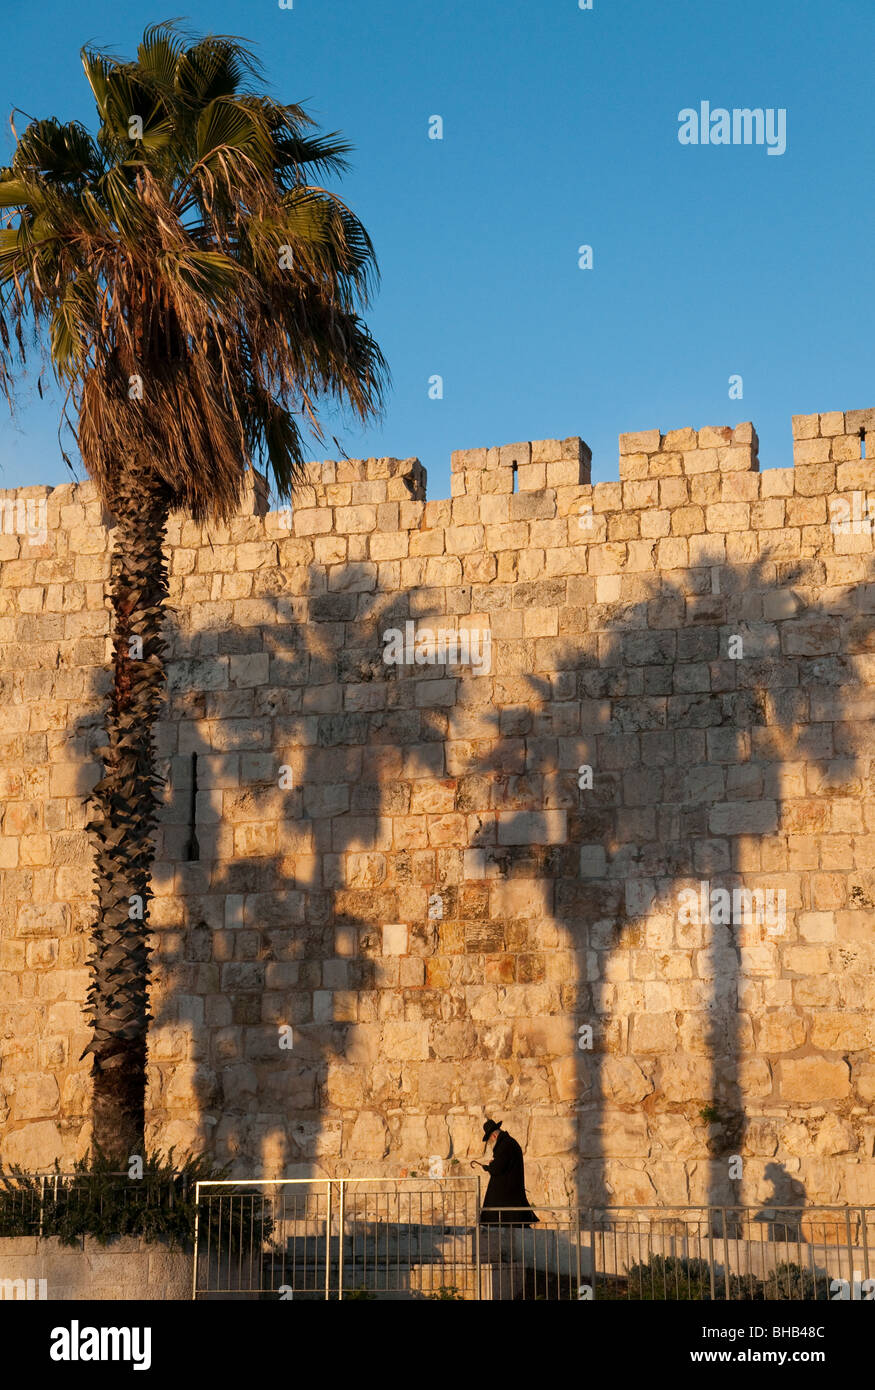 Ebreo ortodosso camminando lungo le mura della città vecchia di Gerusalemme con palme e ombre Foto Stock